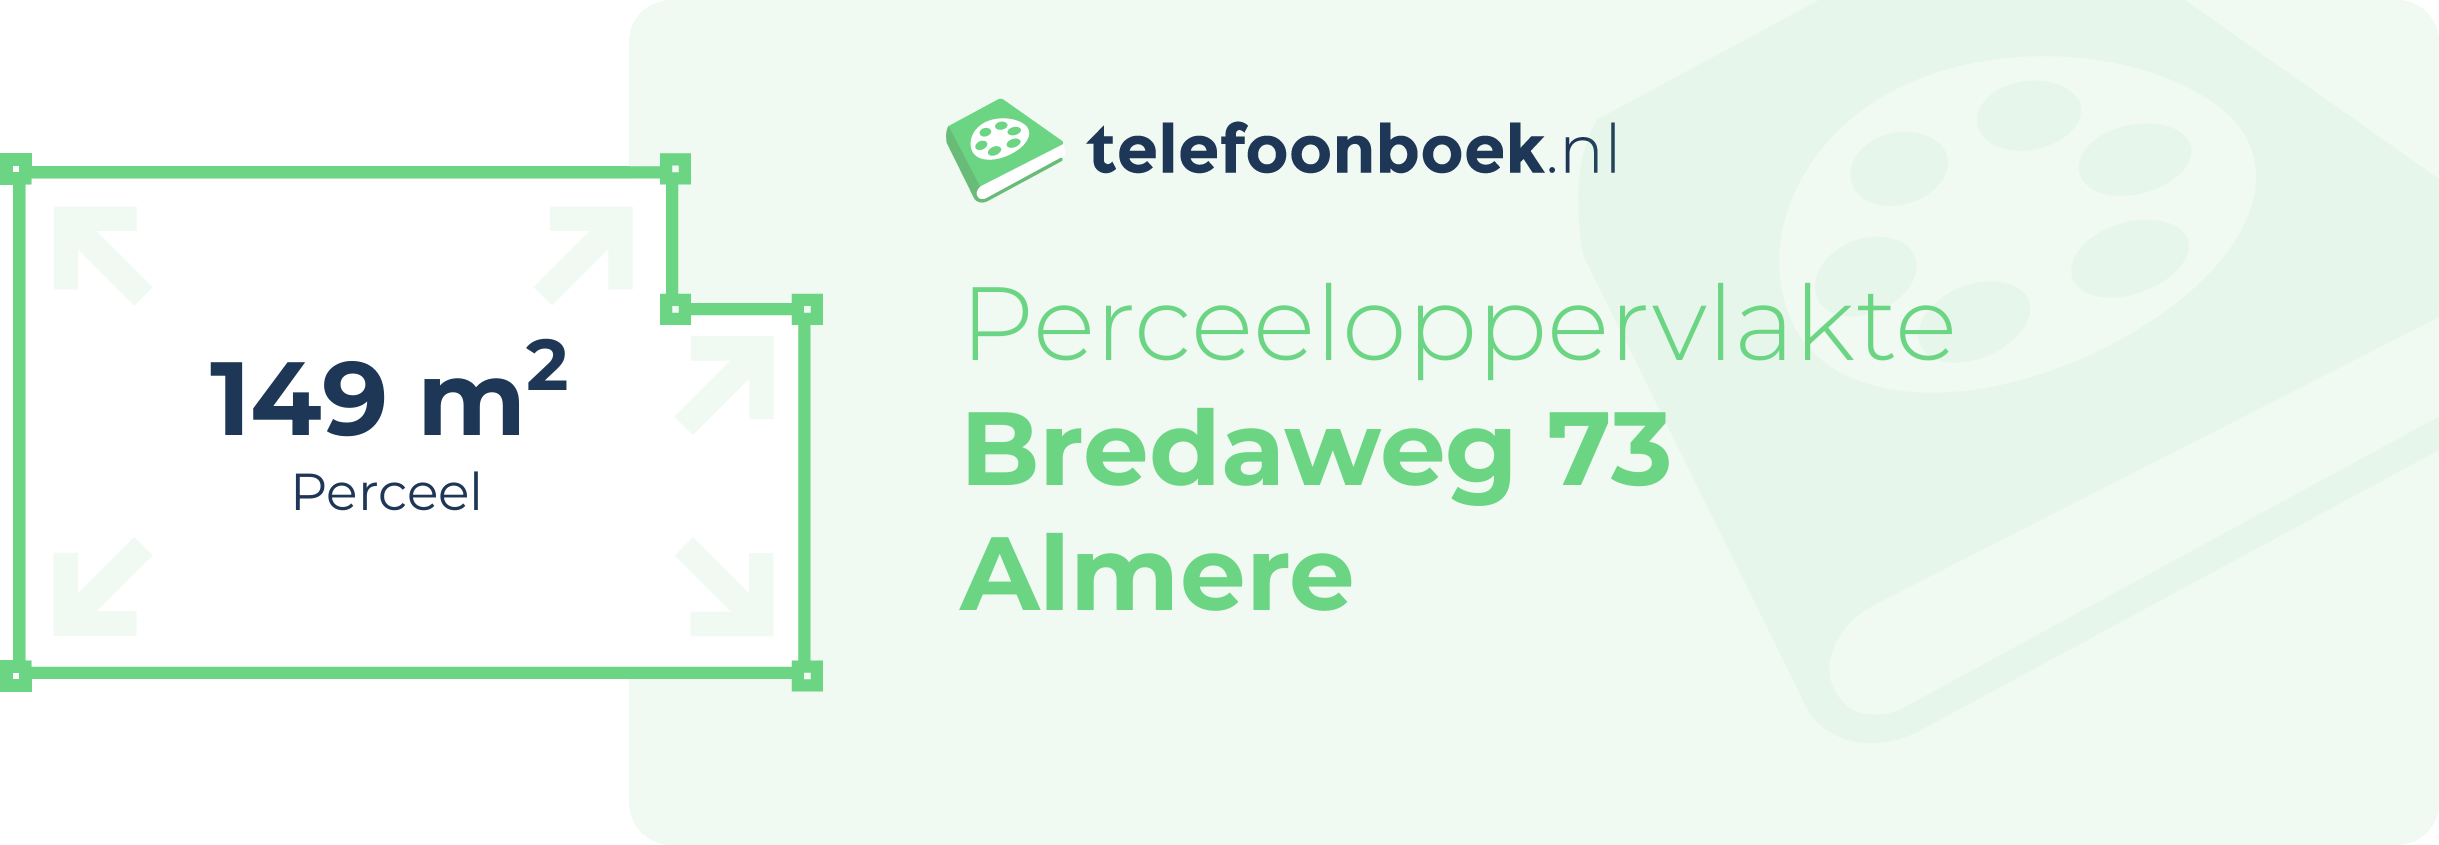 Perceeloppervlakte Bredaweg 73 Almere